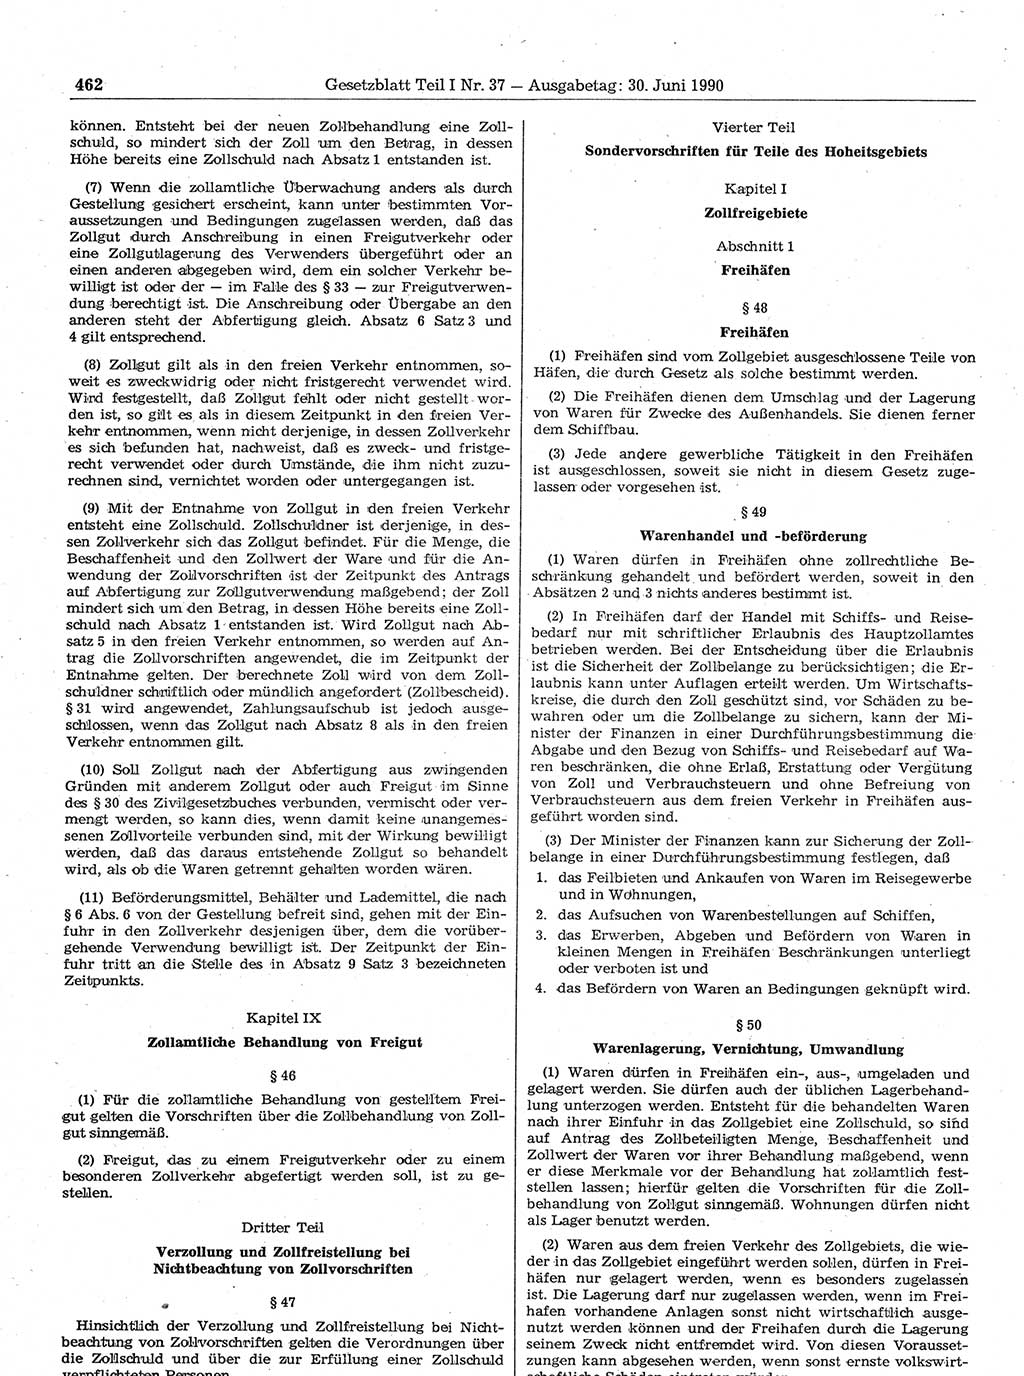 Gesetzblatt (GBl.) der Deutschen Demokratischen Republik (DDR) Teil Ⅰ 1990, Seite 462 (GBl. DDR Ⅰ 1990, S. 462)